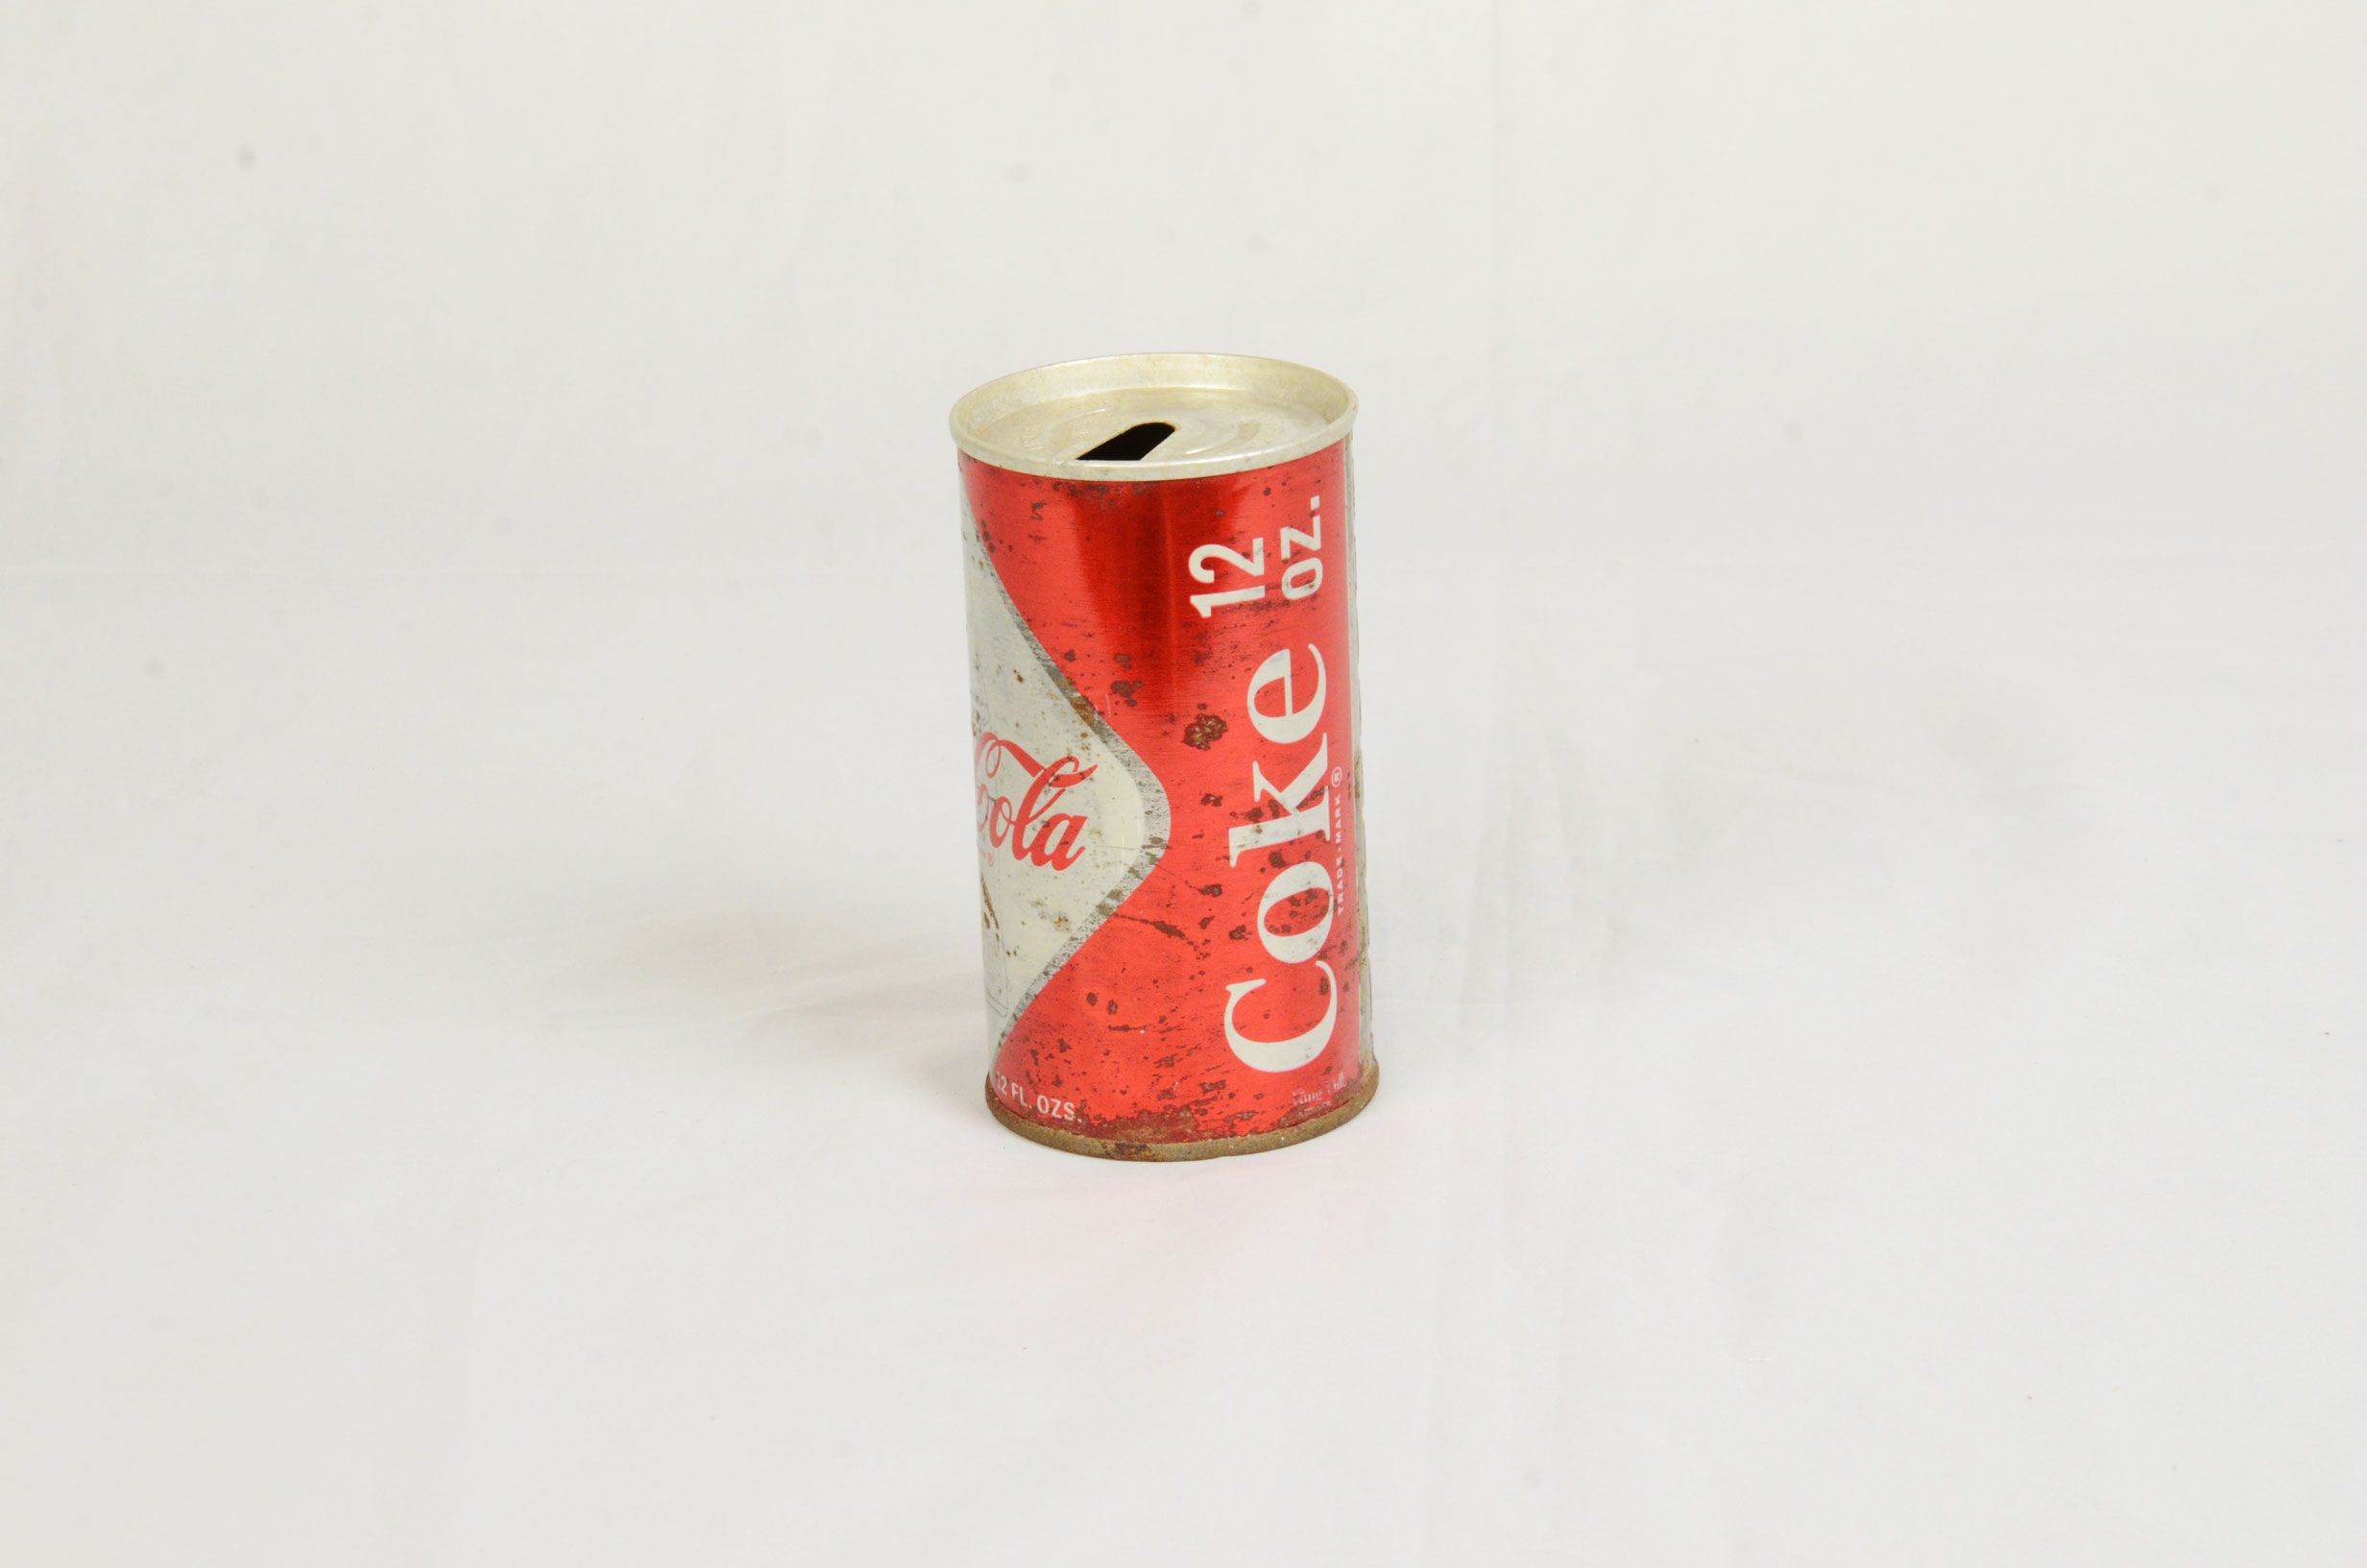 Set of 4 Coca-Cola items